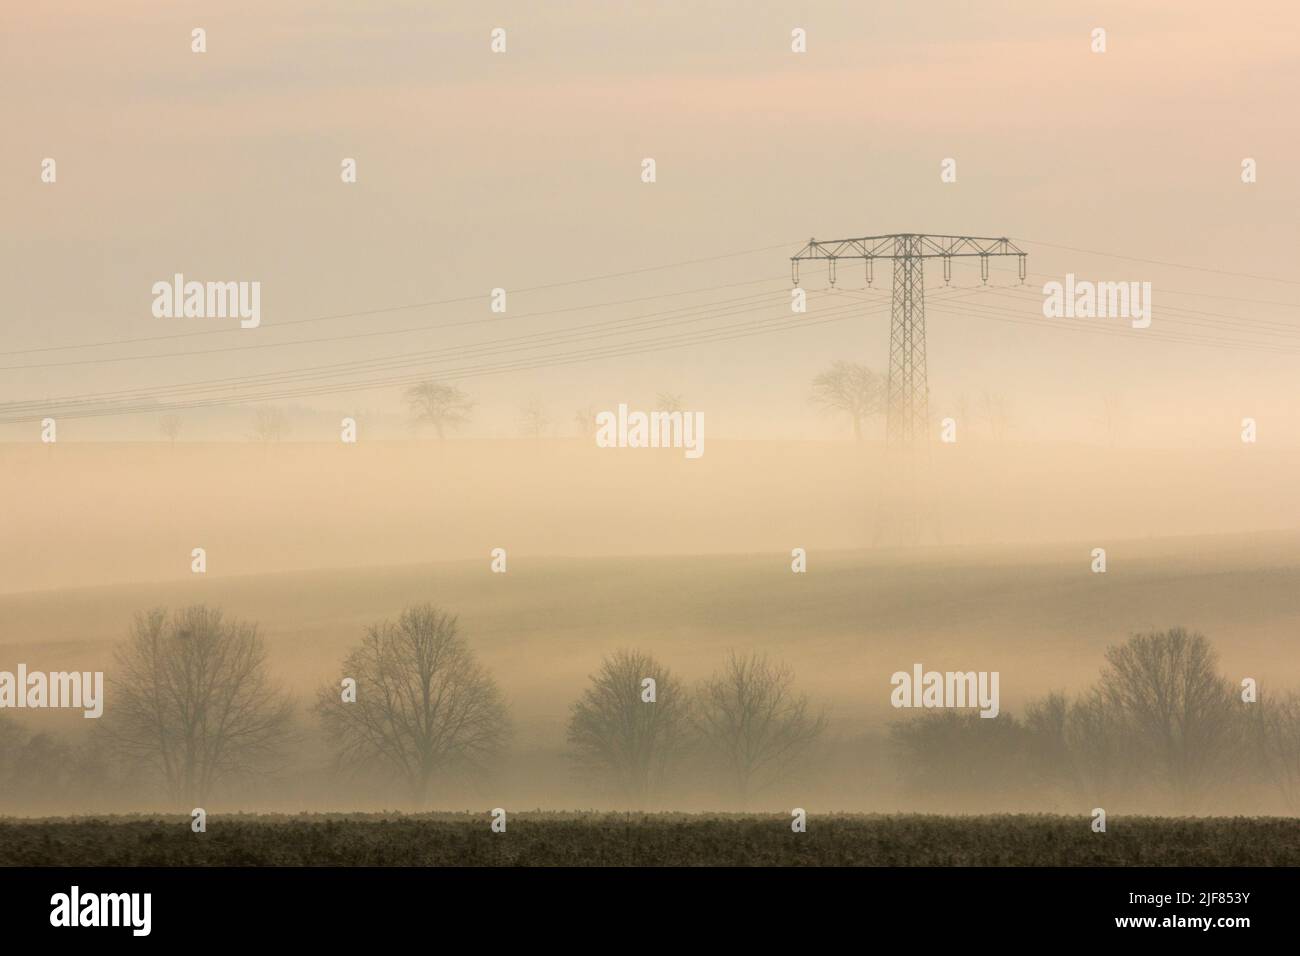 Silhouetten von Bäumen und einem Hochspannungsmast im Nebel an einem Morgen im Herbst, Silhouetten von Bäumen und Hochspannungsmasten im nebligen Morgen Stockfoto